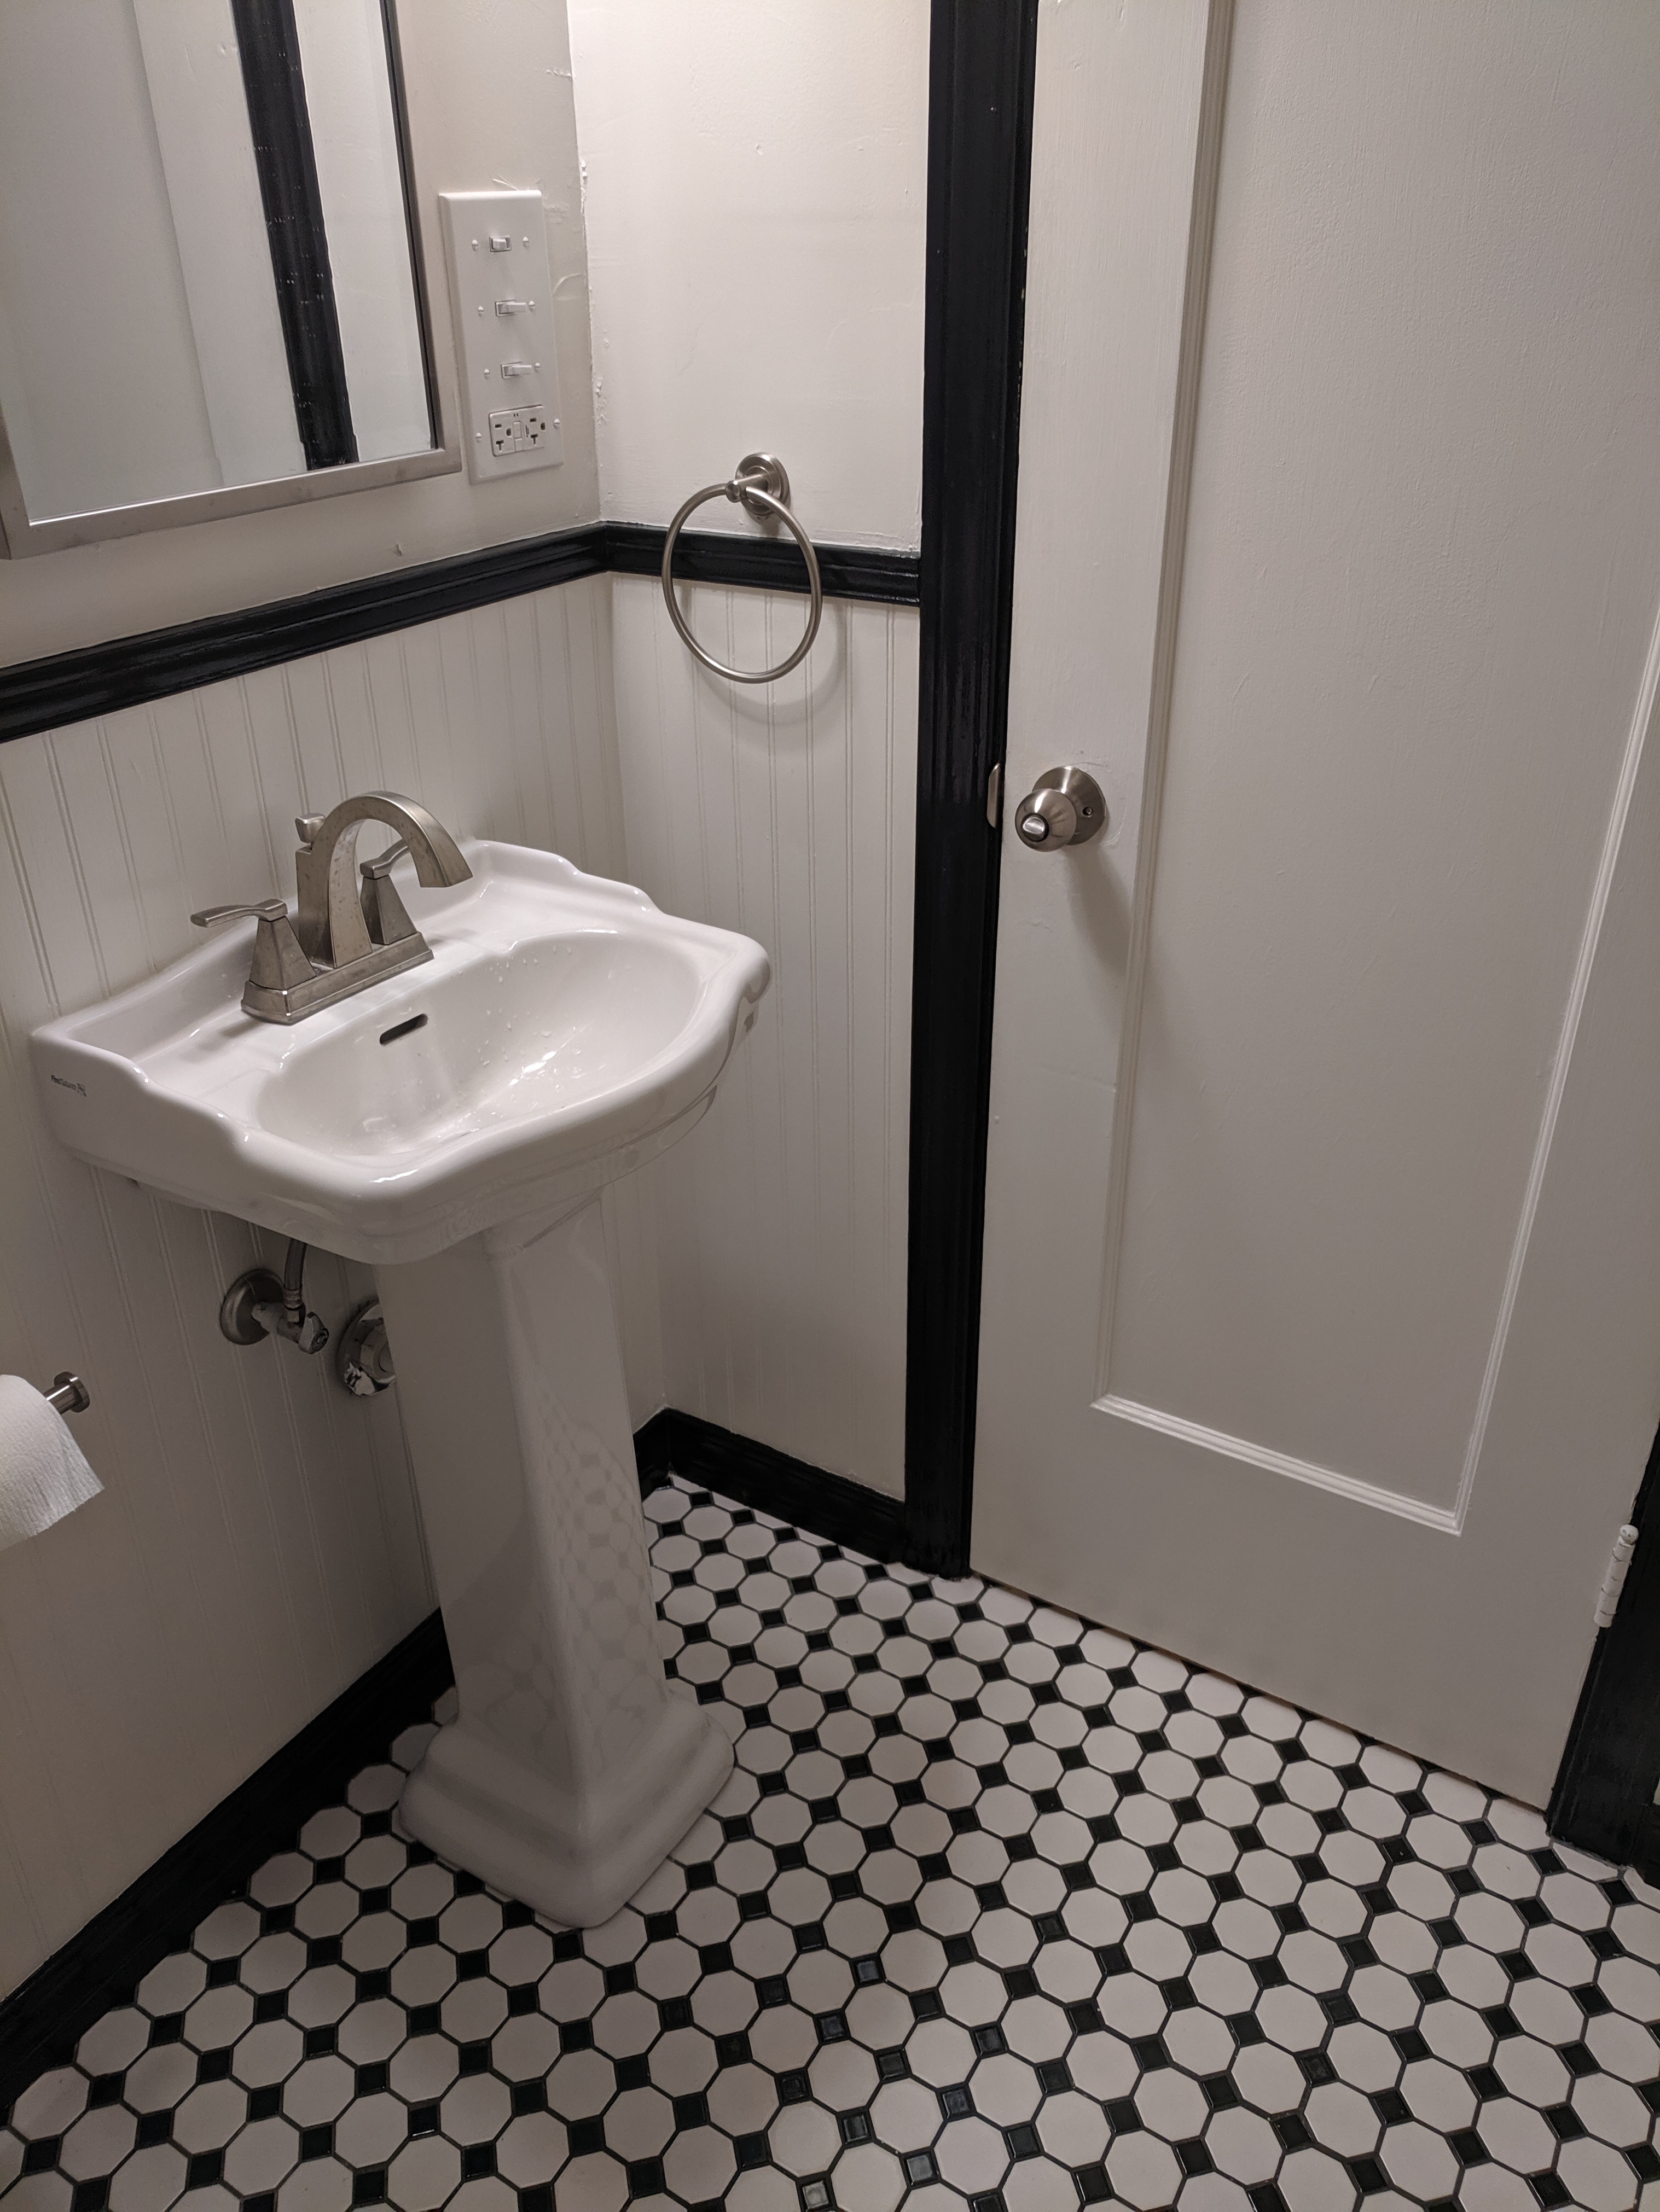 Downstairs Bathroom pedestal sink